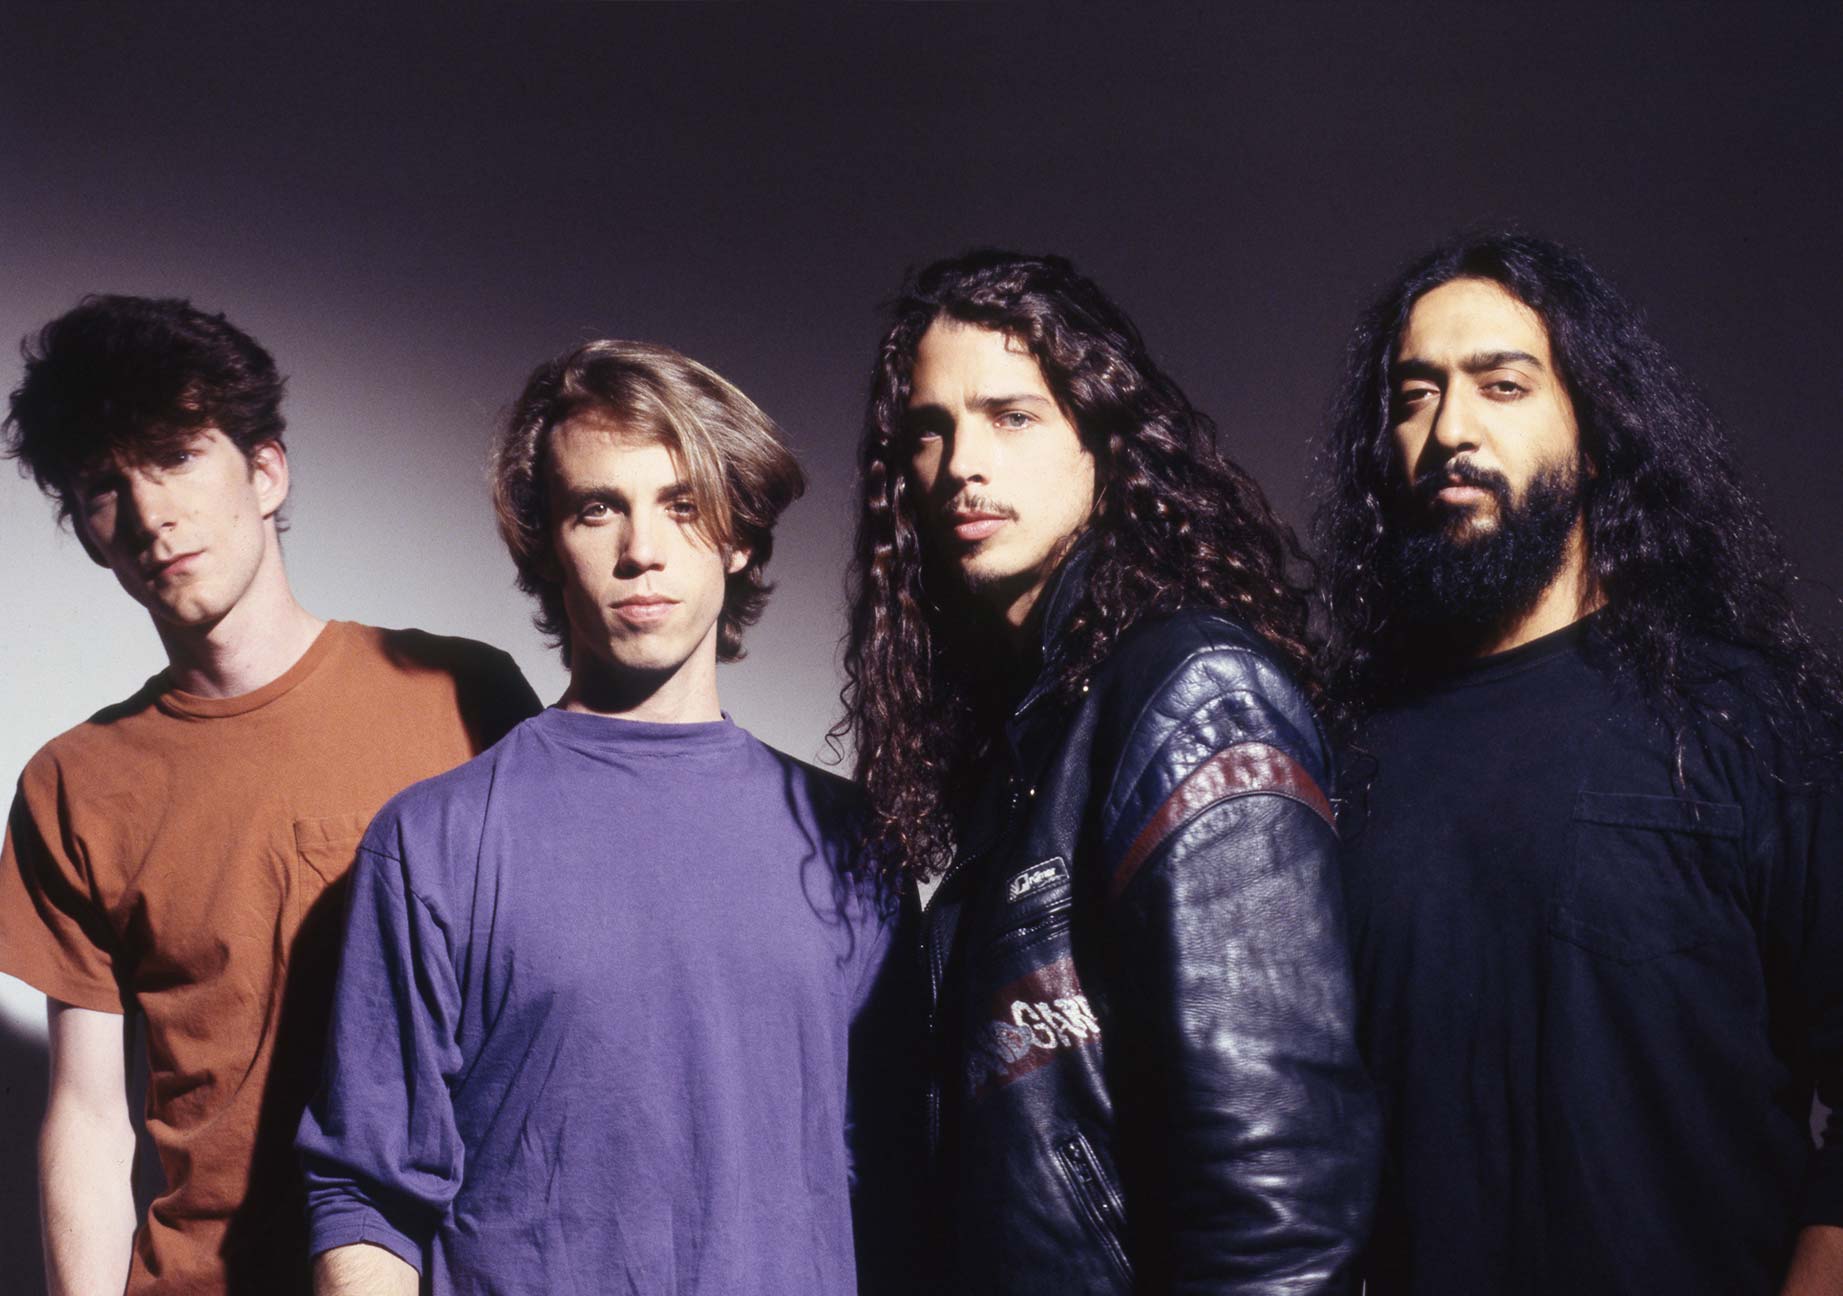 Soundgarden – Chris Cornell